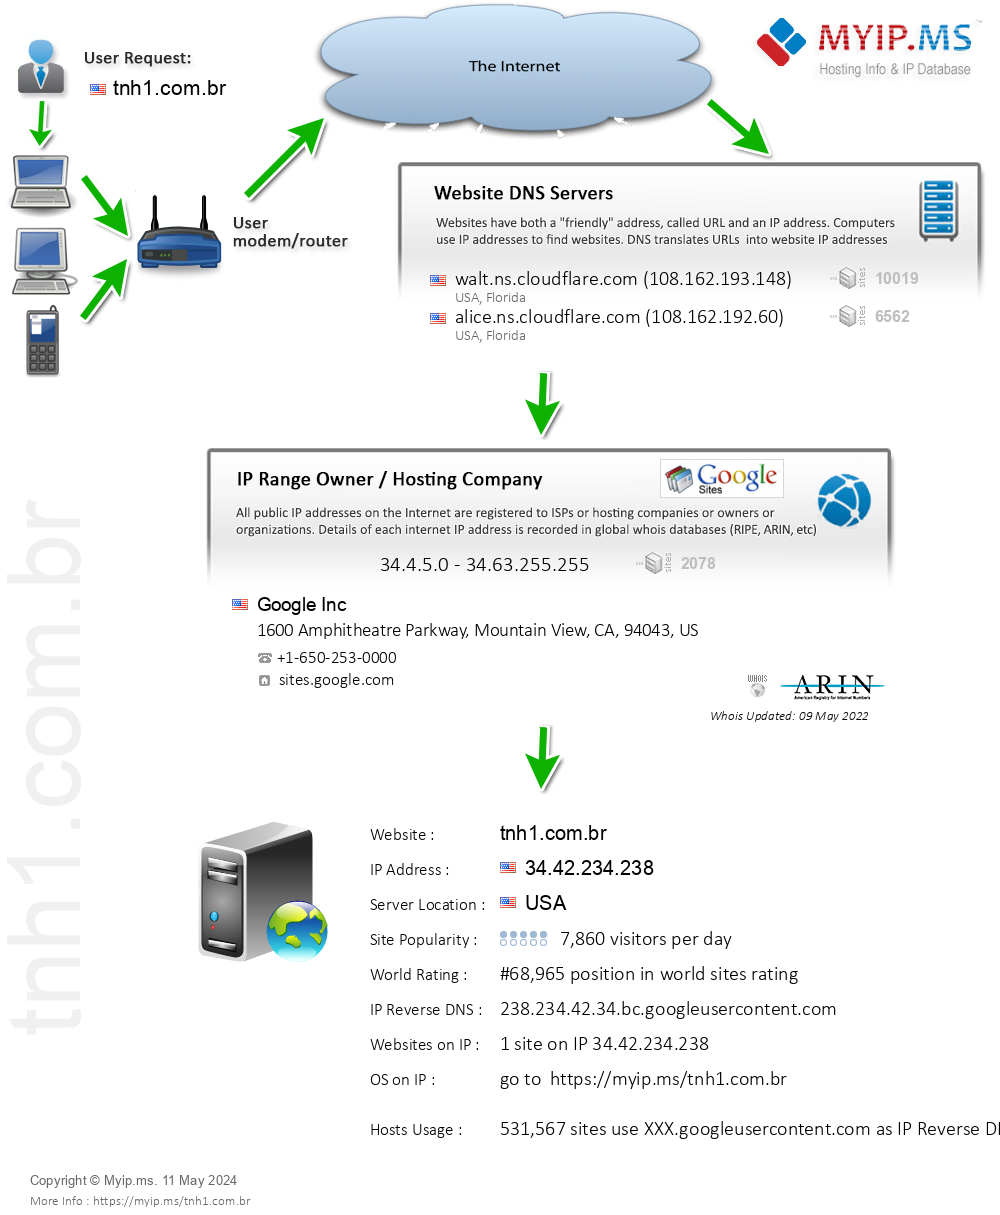 Tnh1.com.br - Website Hosting Visual IP Diagram